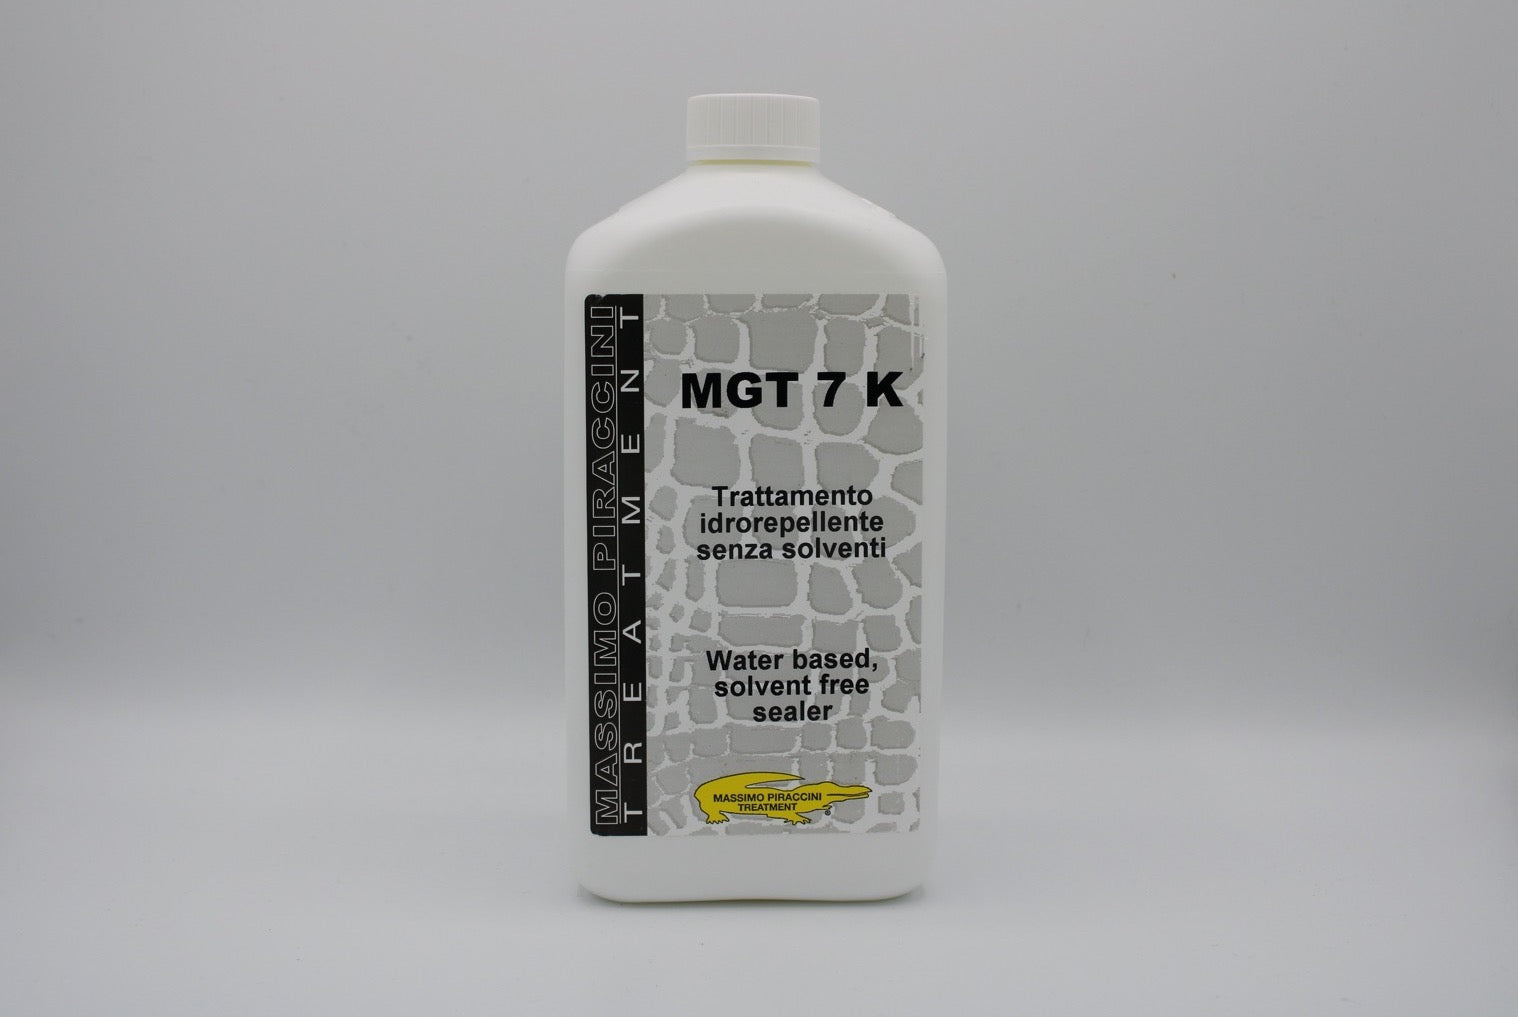 MGT 7 K – Waterproofing sealer. SOLVENT FREE